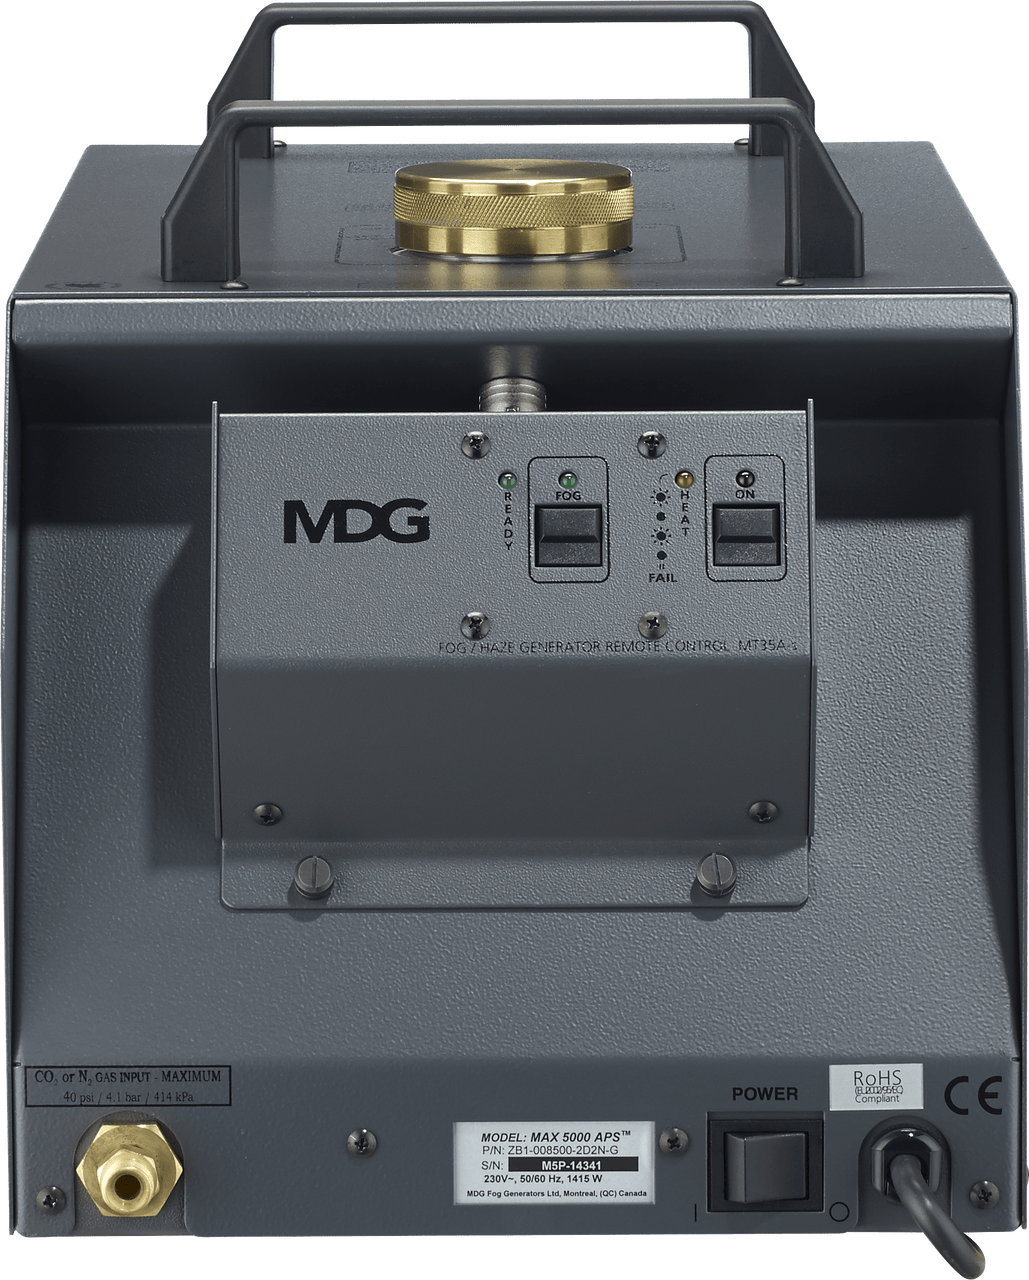 MDG MDGM5 MAX 5000 Fog Generator